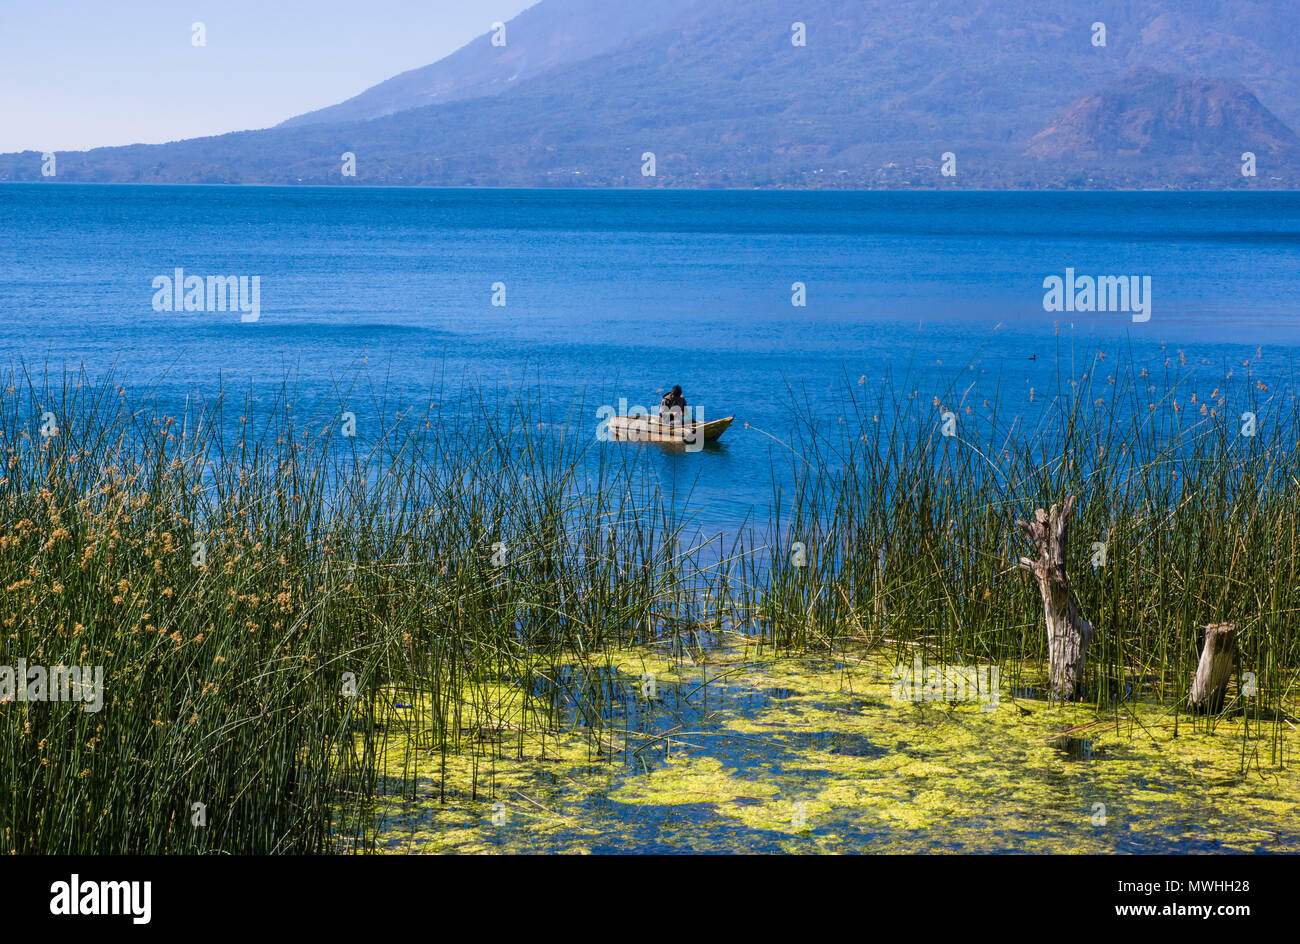 Veduta esterna di totora acquatica di piante al bordo del lago, con il pescatore non identificato in un piccolo barche nel lago Atitlan, con San Pedro vulcano in background Foto Stock